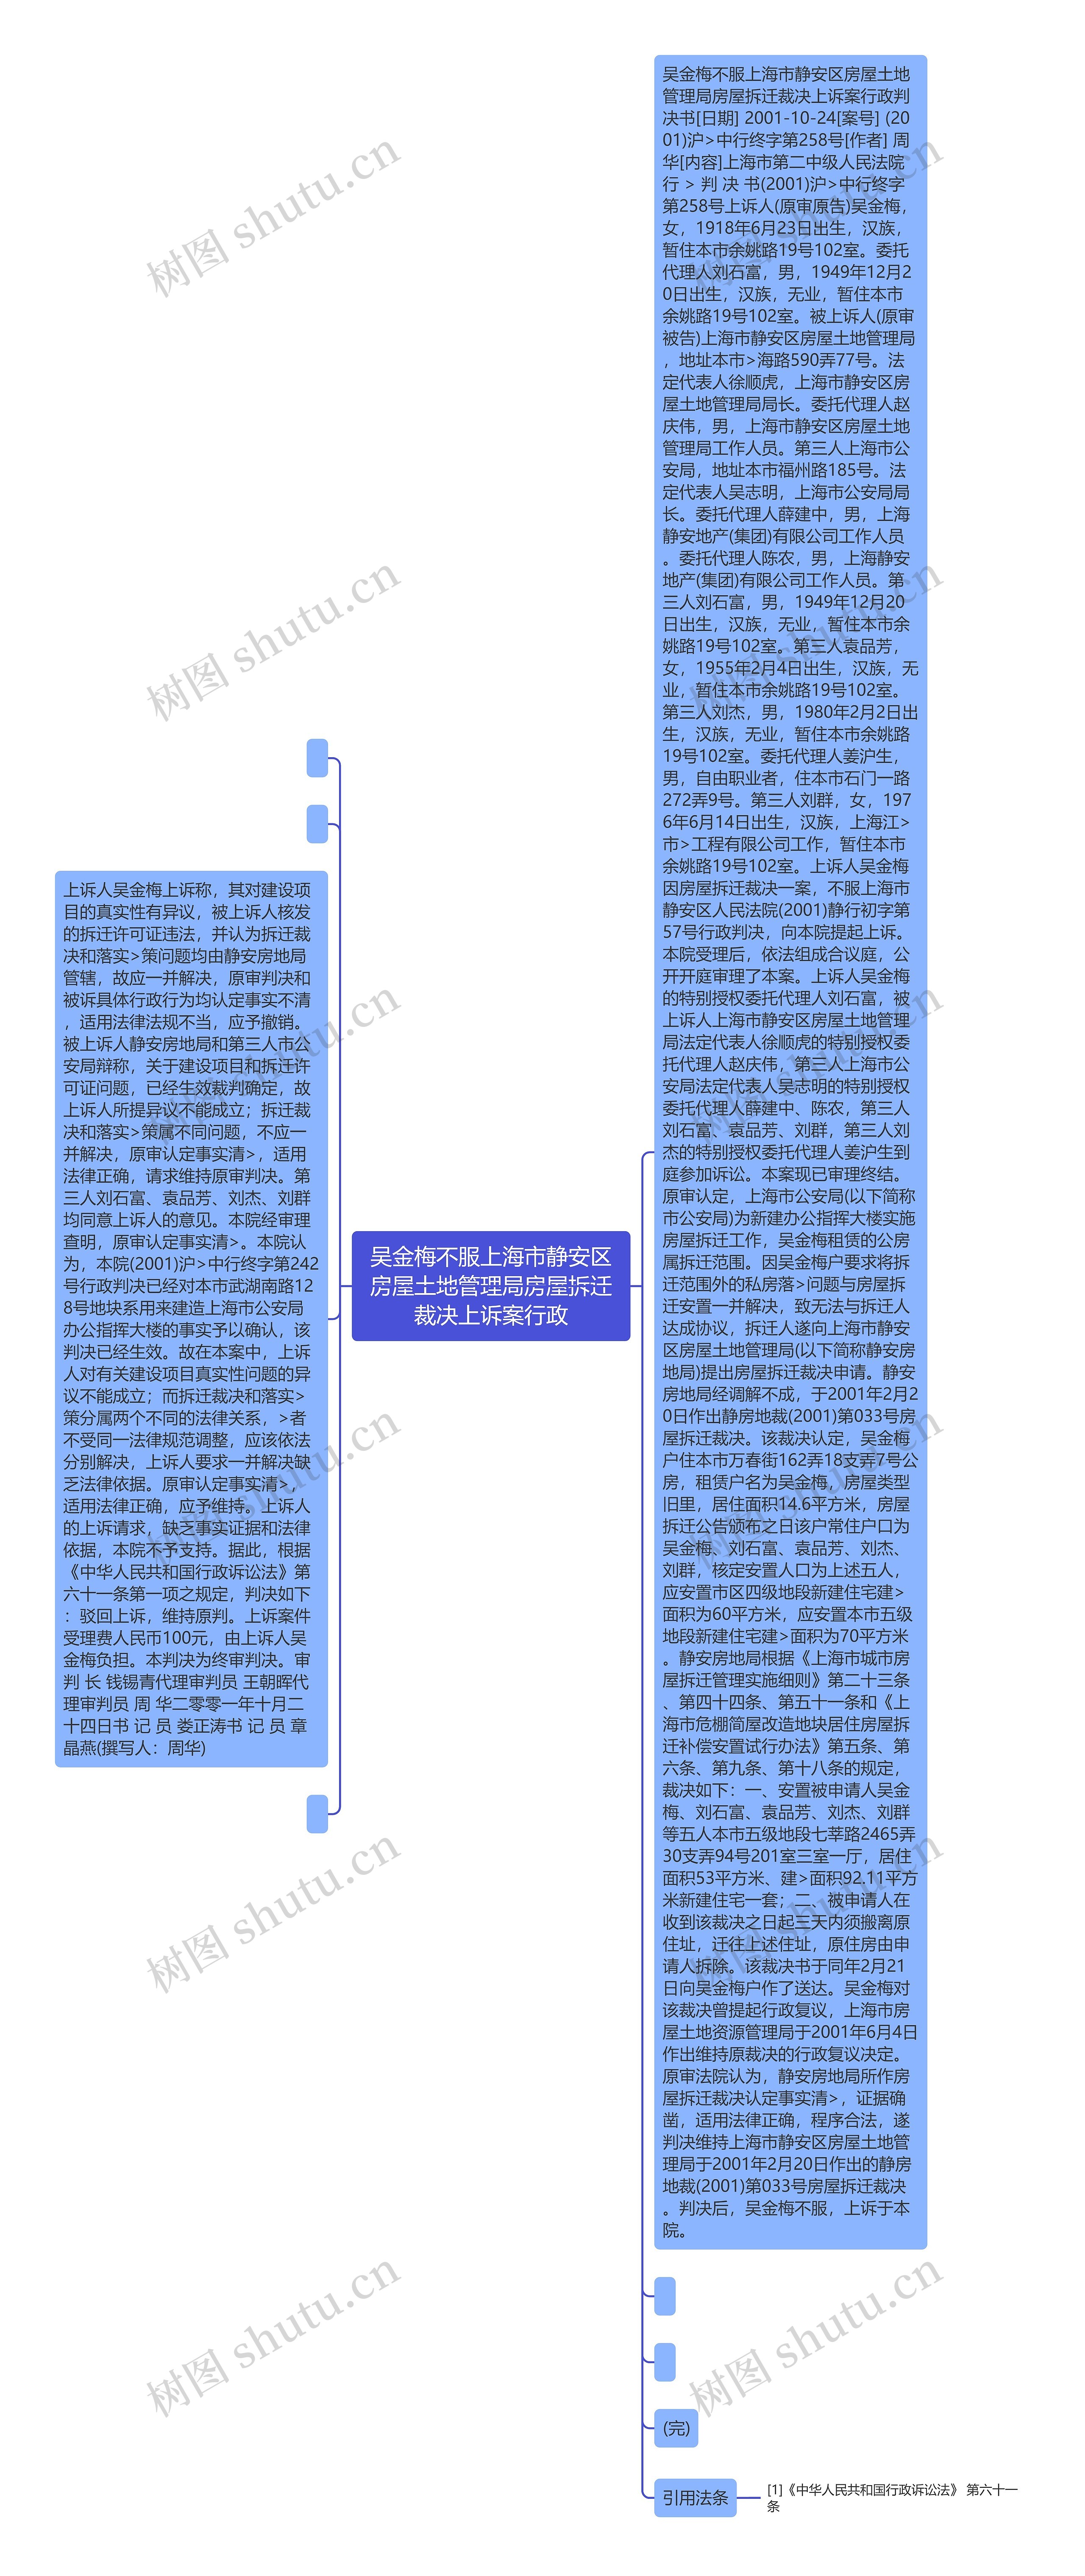 吴金梅不服上海市静安区房屋土地管理局房屋拆迁裁决上诉案行政